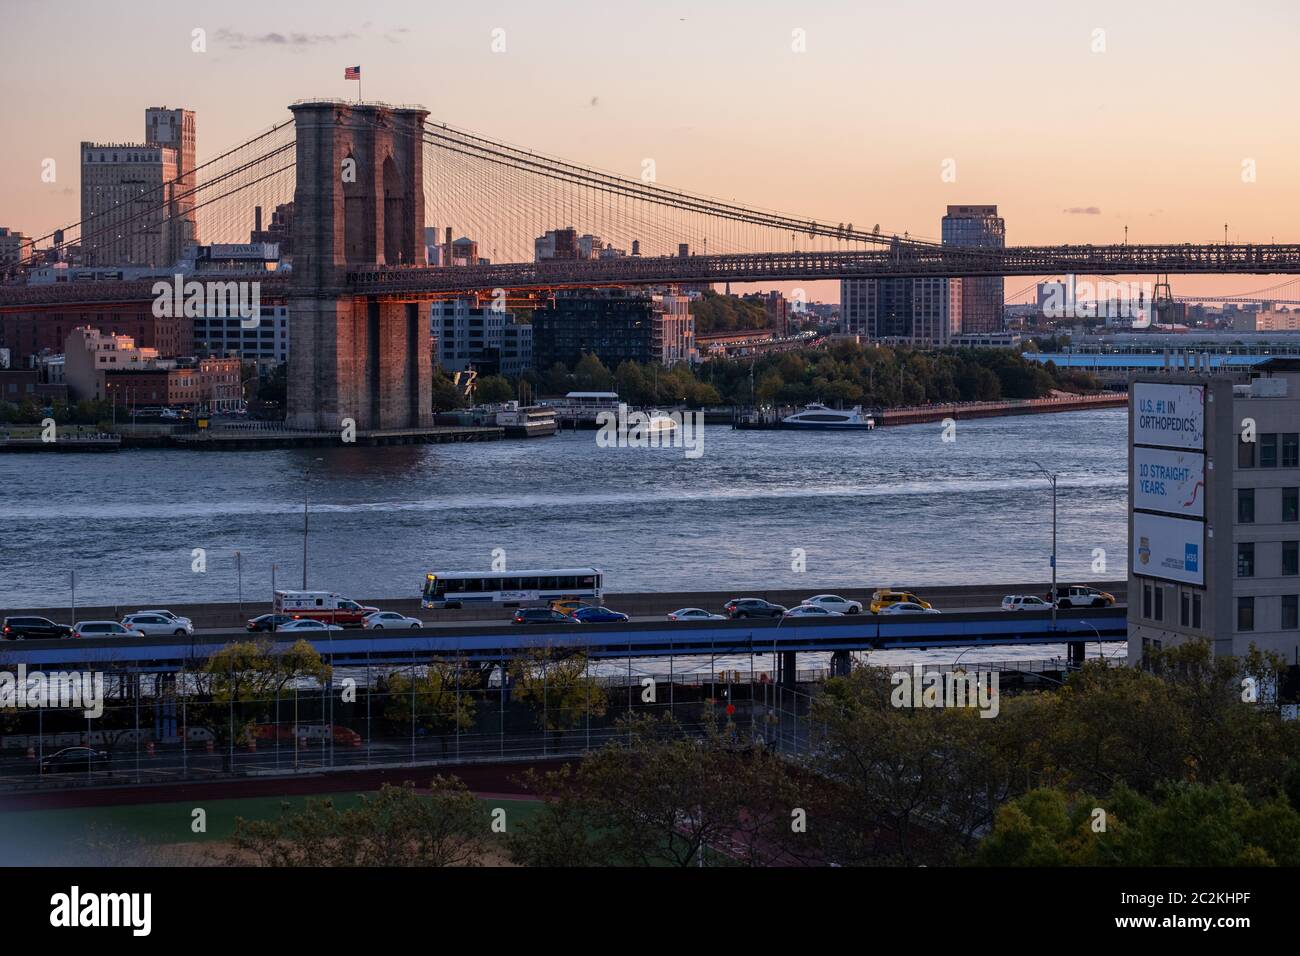 Luz cálida puesta de sol en la vista del Puente de Brooklyn desde el Puente de Manhattan Foto de stock